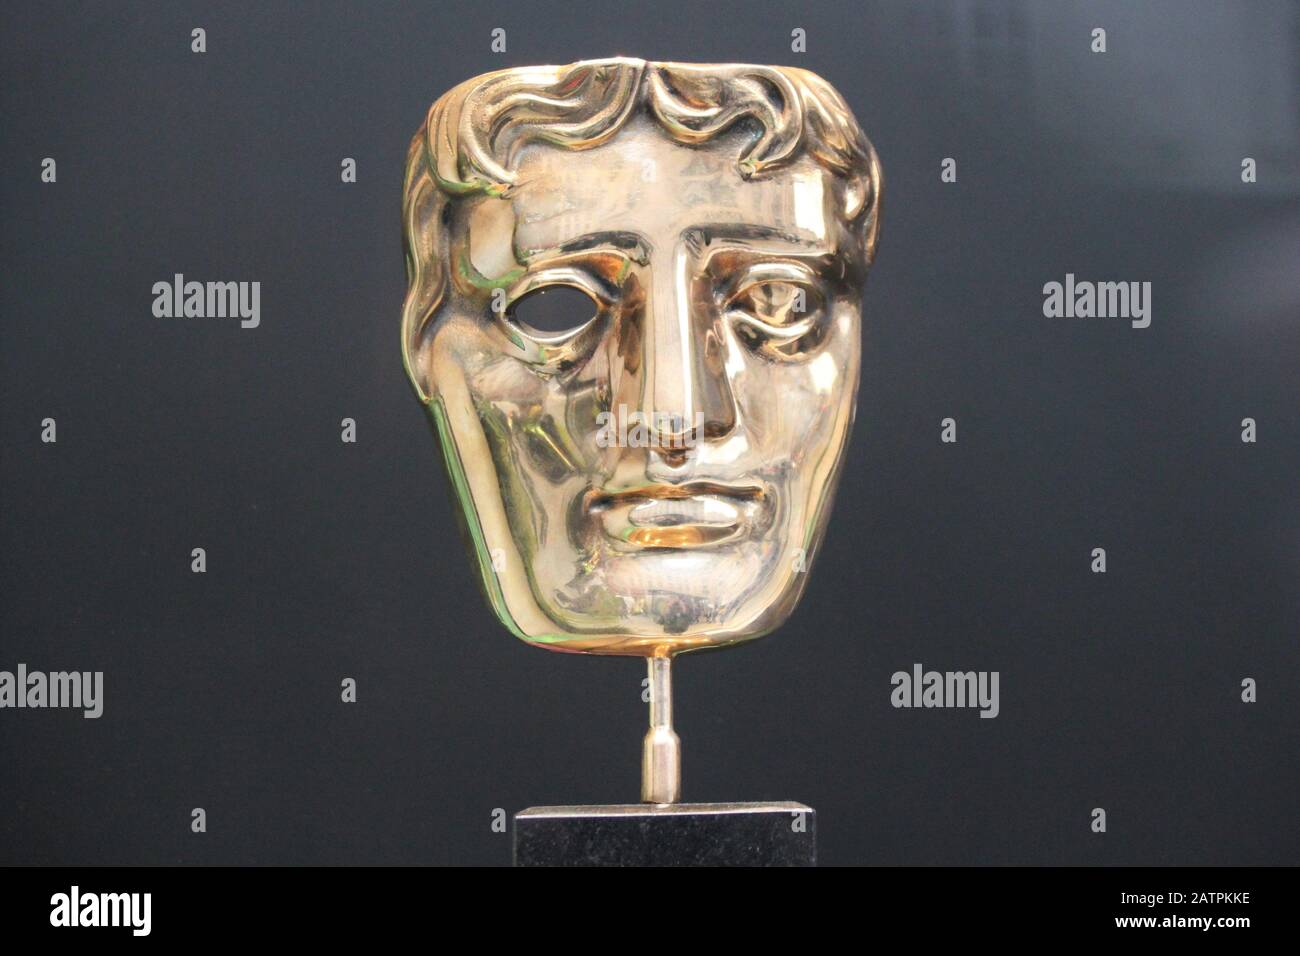 Statua di BAFTA, Londra, Regno Unito - 19 giugno 2018 : BAFTA (premio della televisione e del film della British Academy) premio trofeo della statua su scorta di esposizione, foto, fotografia Foto Stock